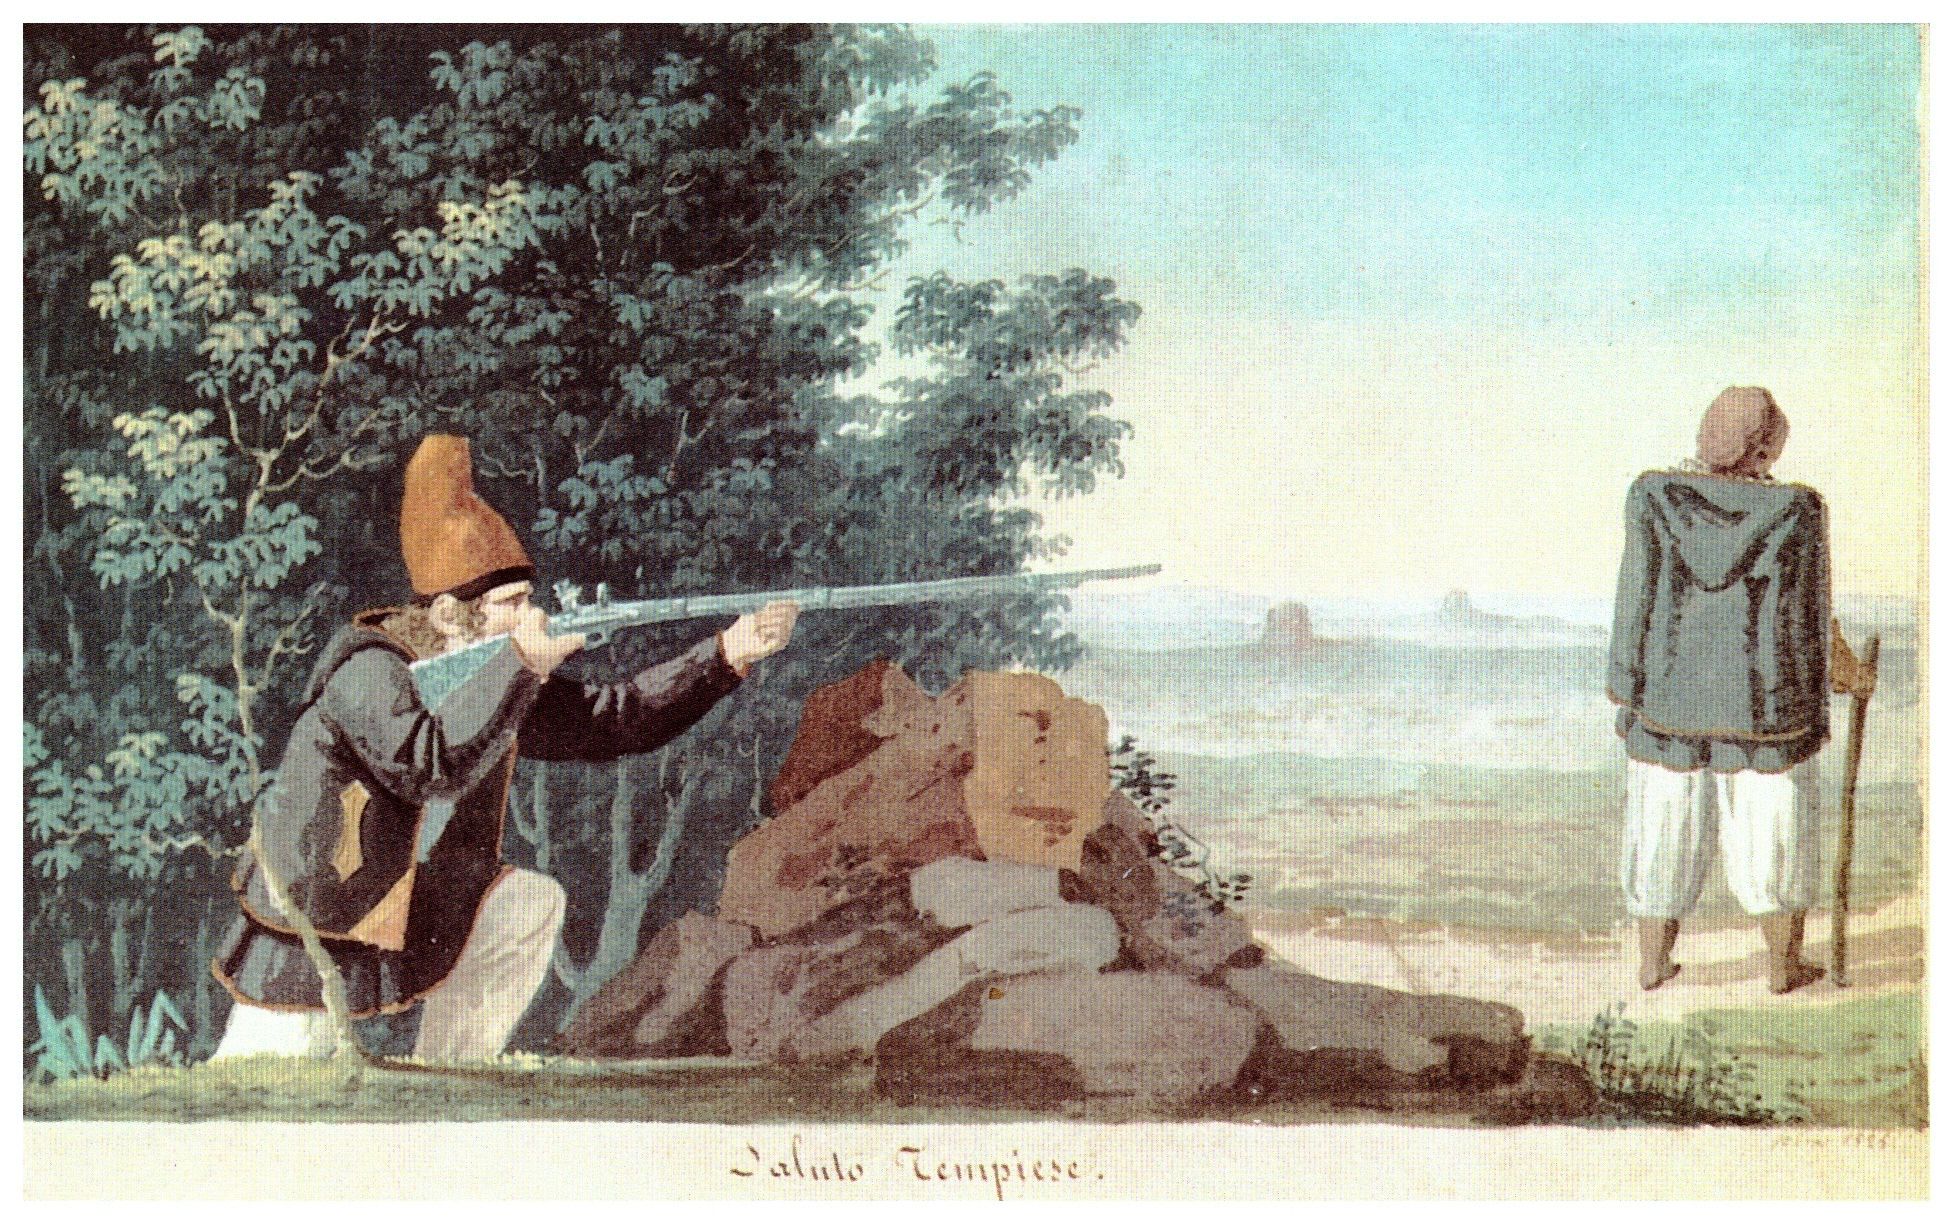 Giuseppe Cominotti - Saluto tempiese, 1825